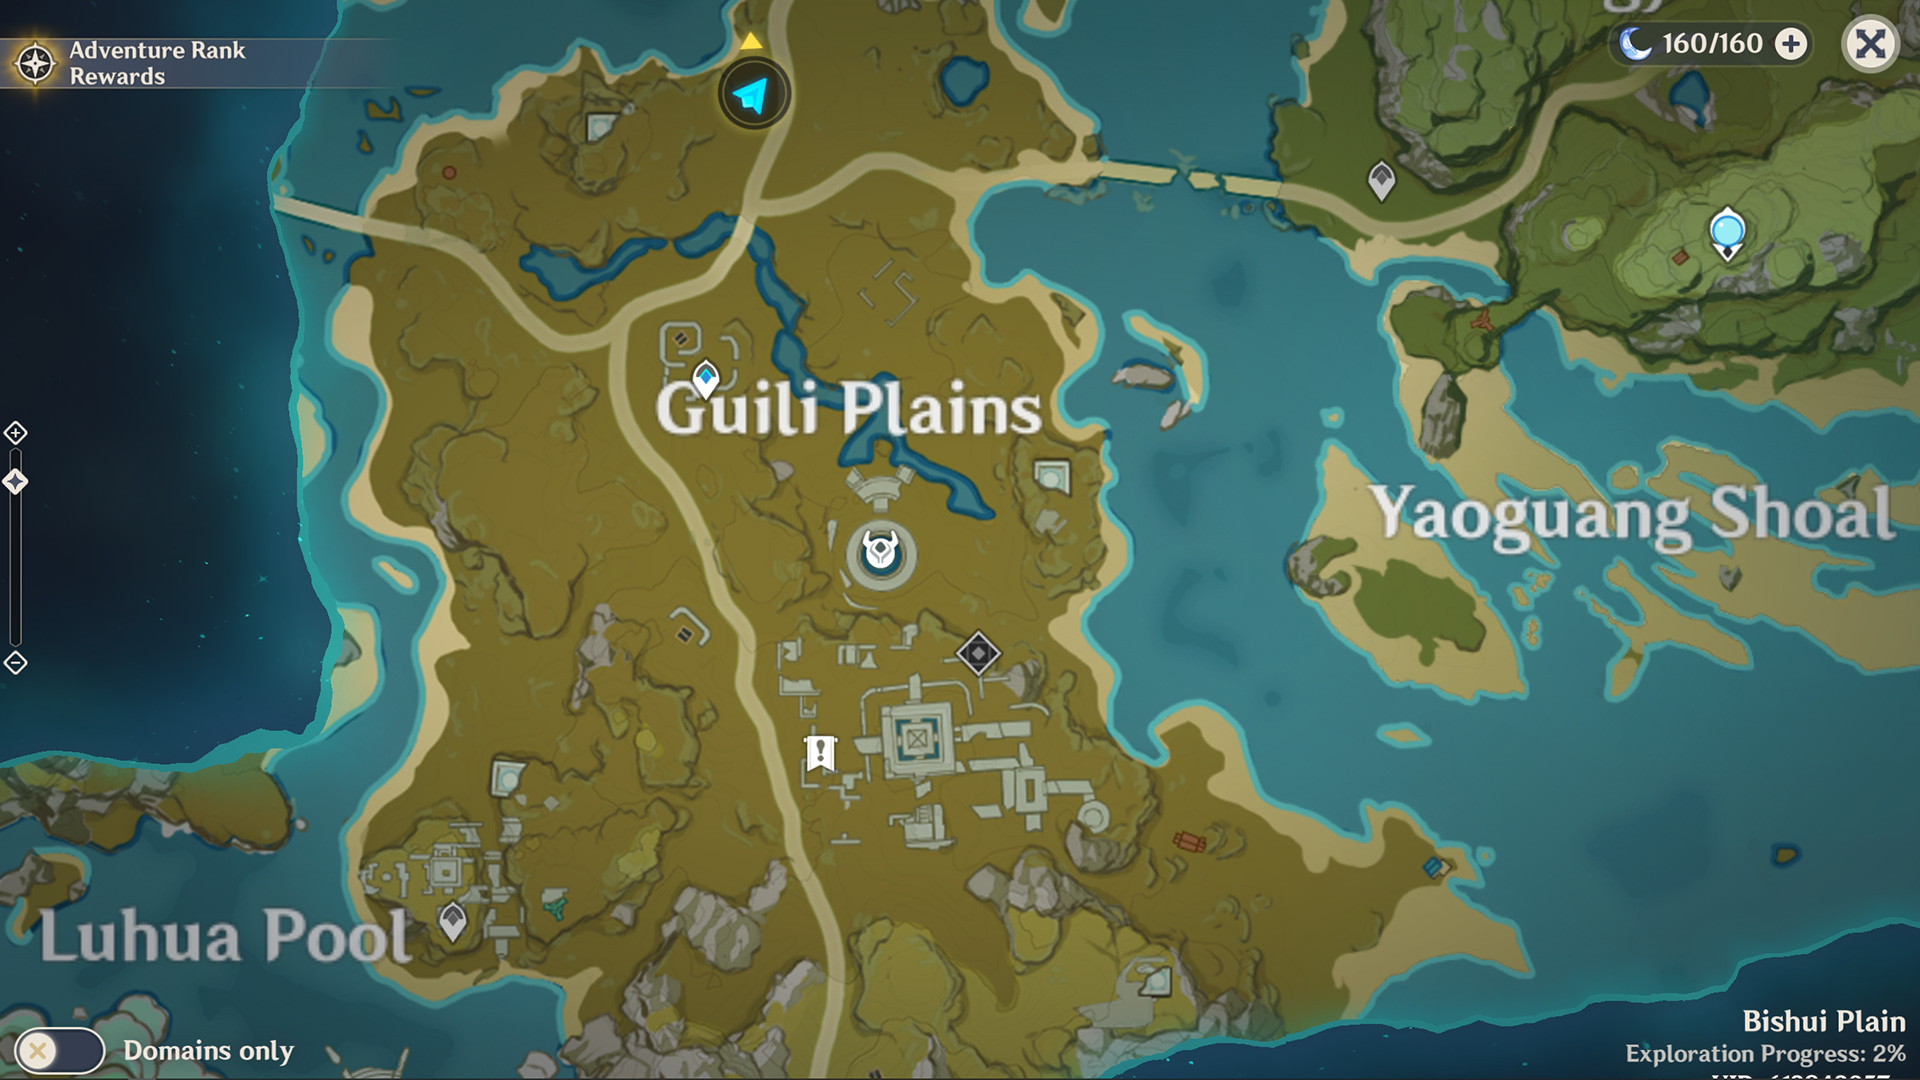 genshin impact treasure lost found quest guide location final rune